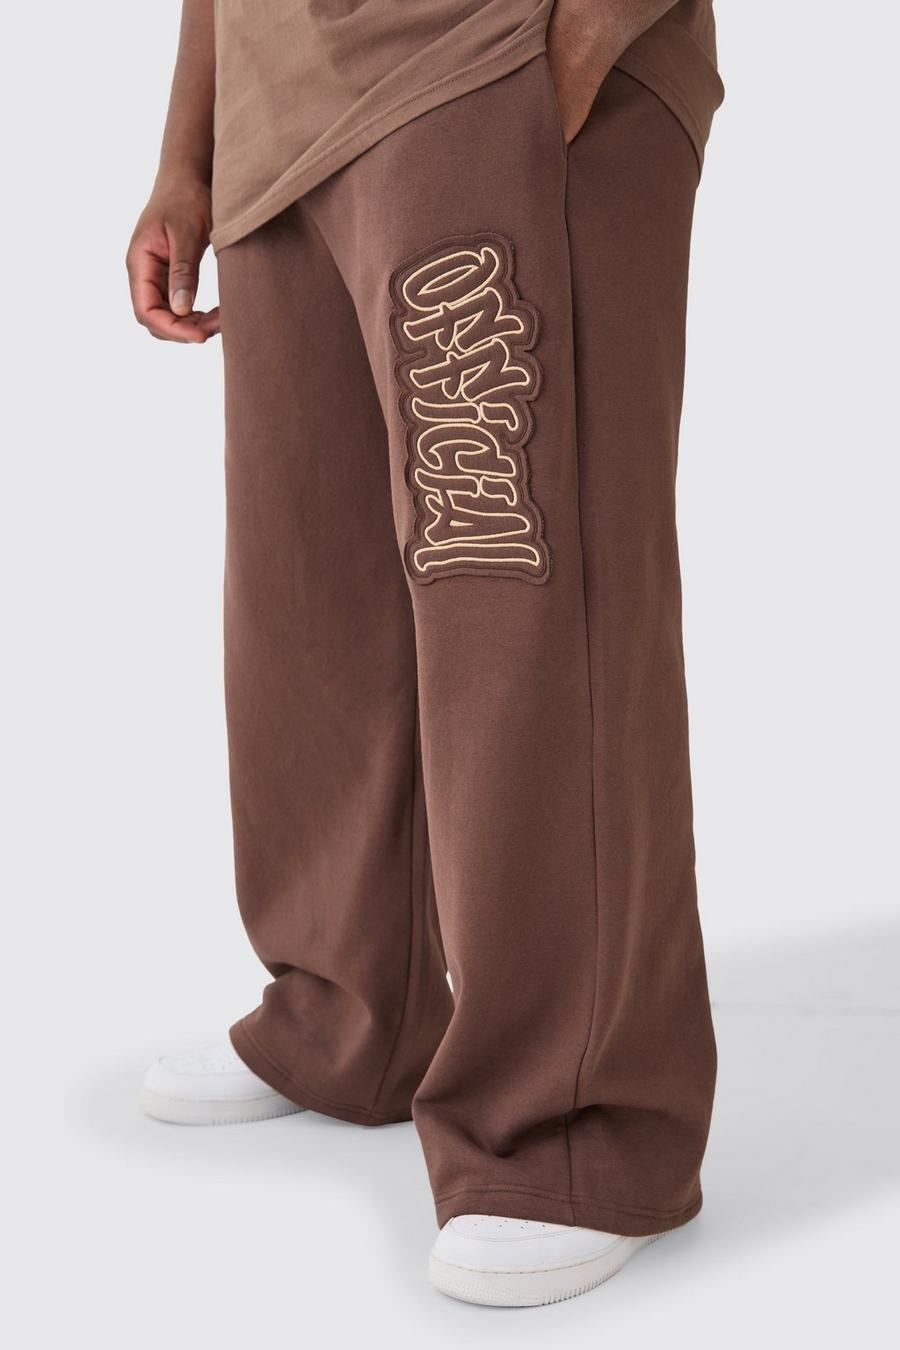 Pantalón deportivo Plus Official de holgura ancha con aplique, Chocolate